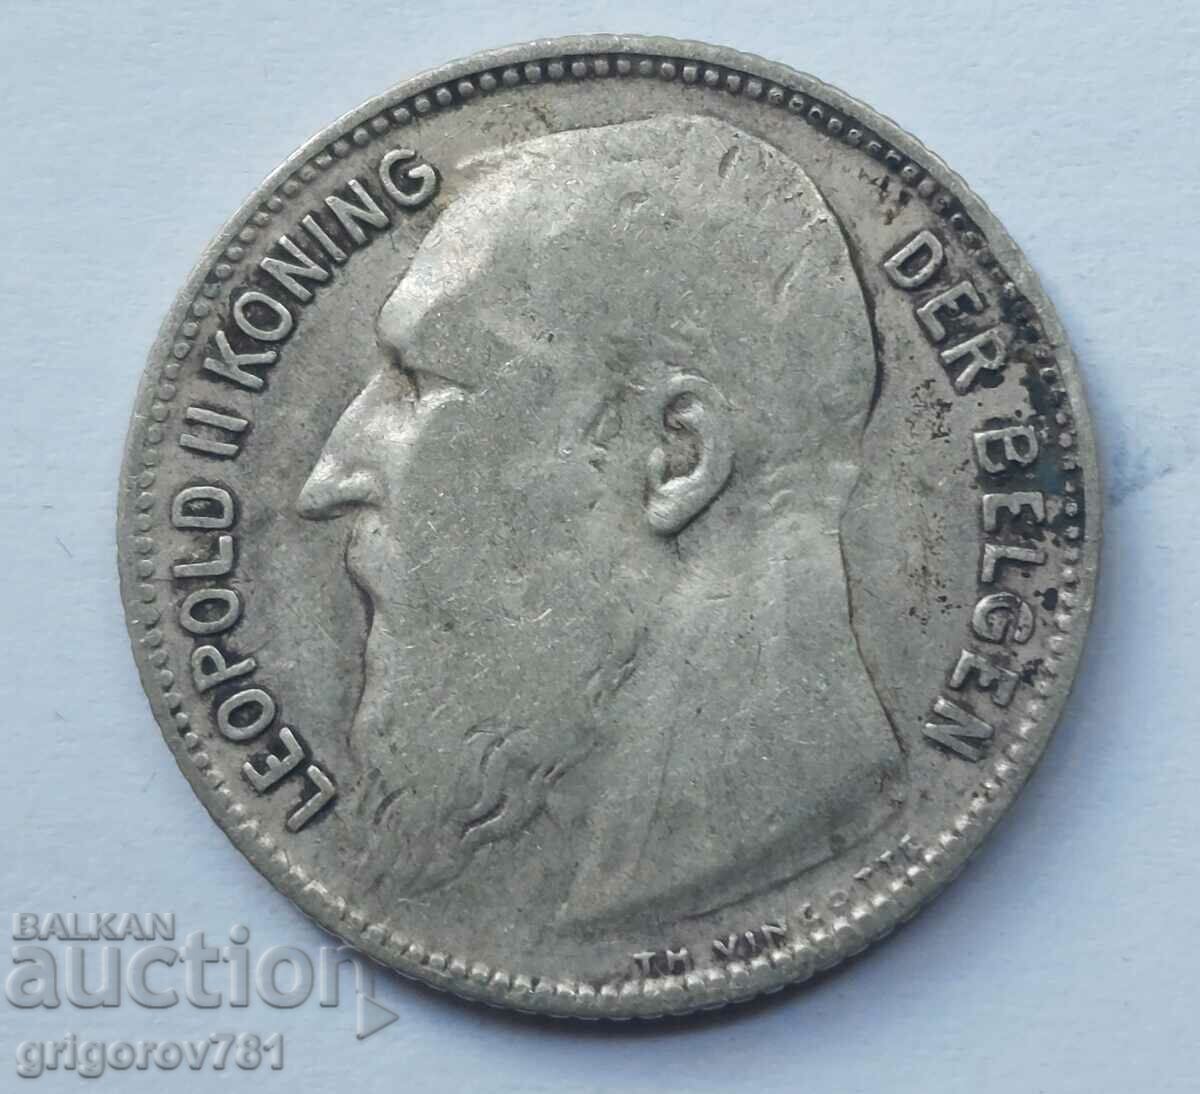 1 franc silver Belgium 1909 - silver coin #67